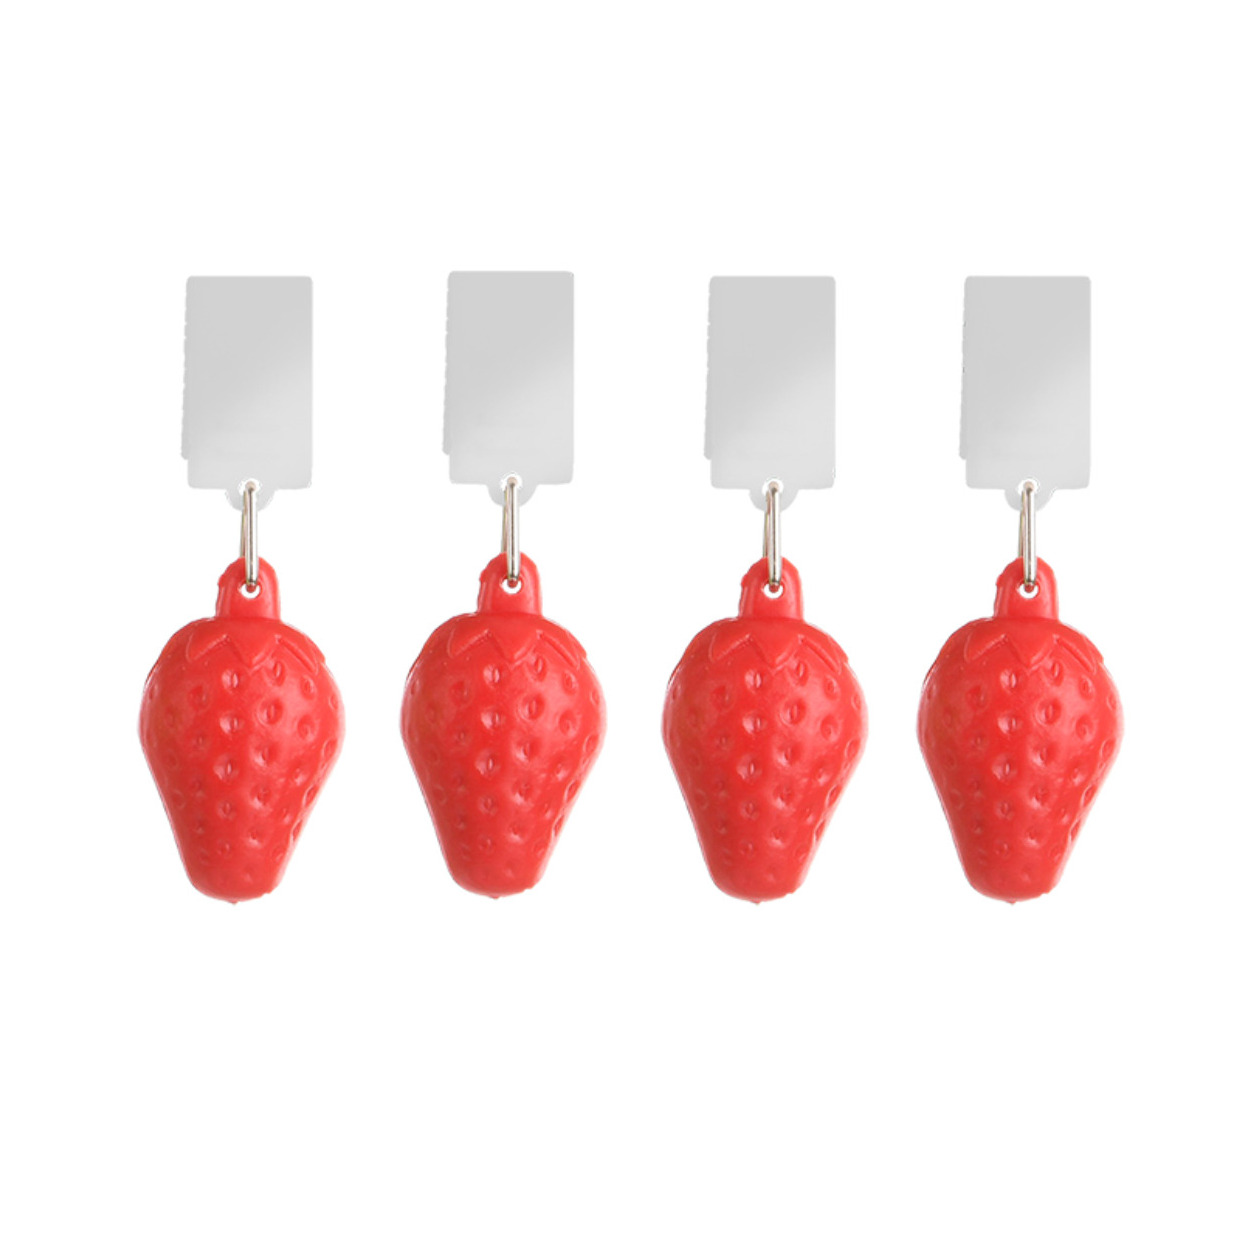 Tafelkleedgewichten aardbeien - 4x - rood - kunststof - voor tafelkleden en tafelzeilen -